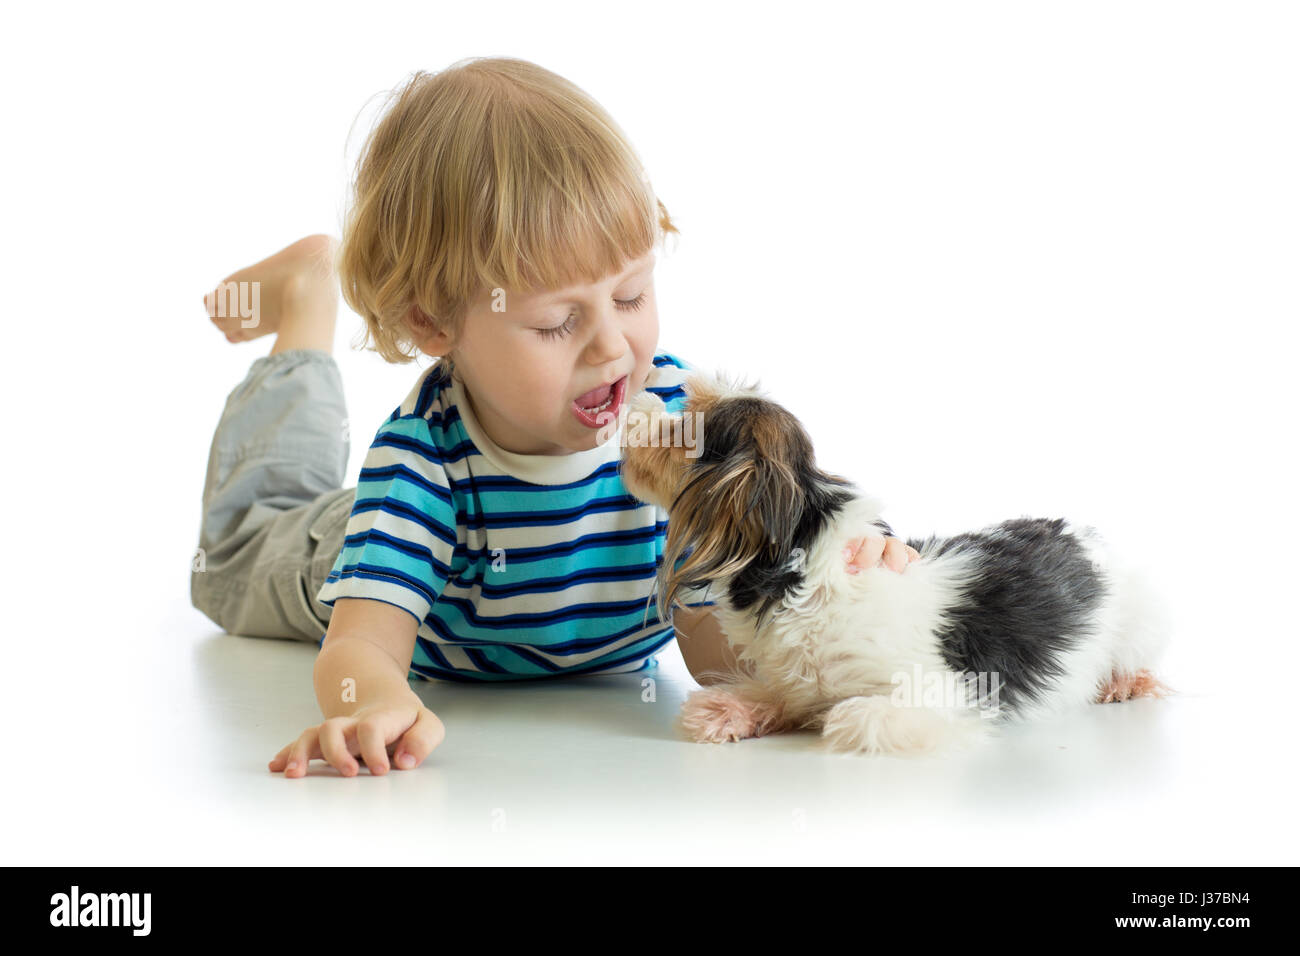 Drôle de petit boy kissing puppy dog, isolé sur fond blanc Banque D'Images